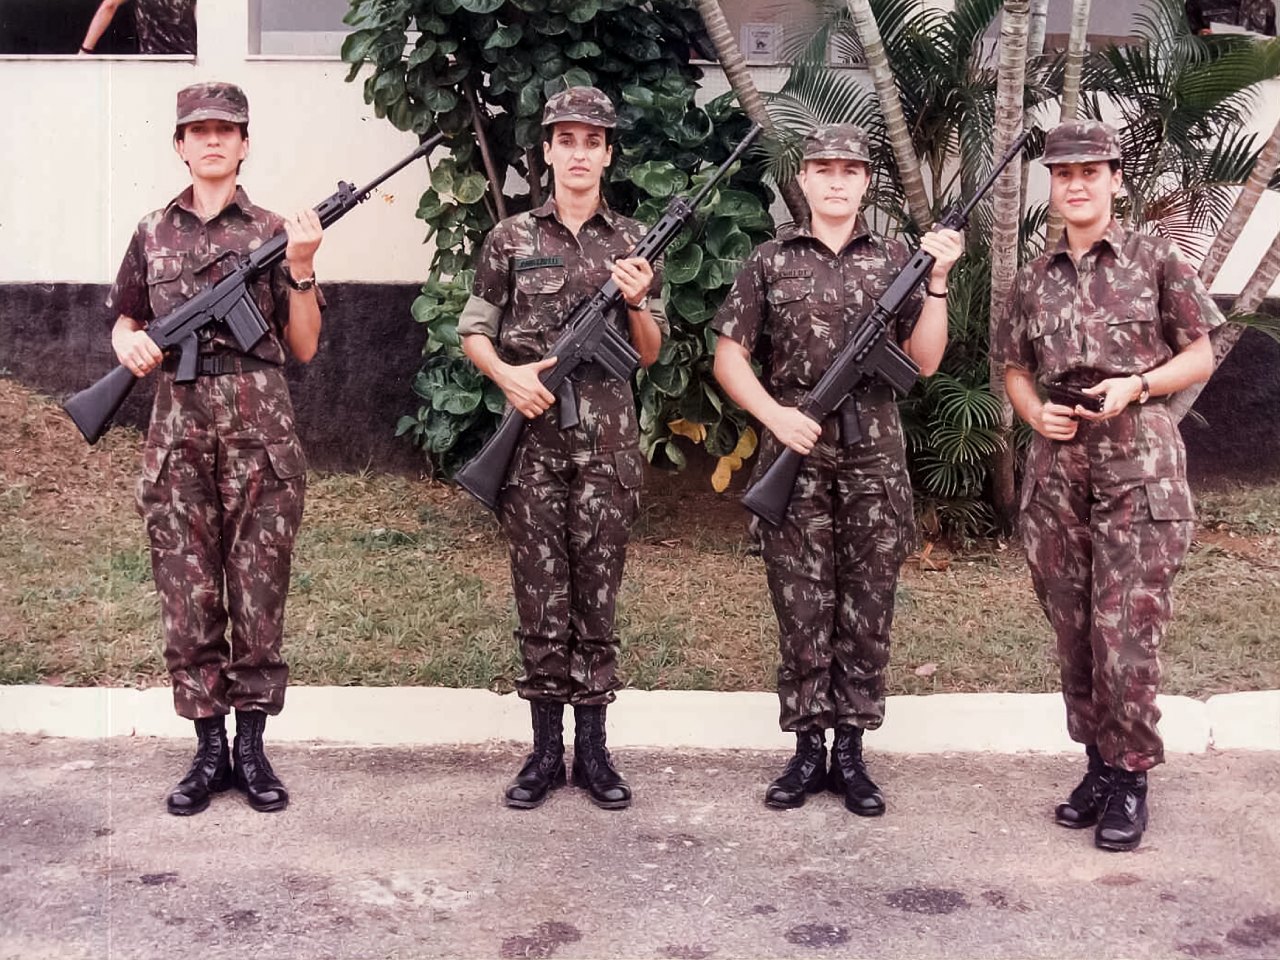 O que é preciso para entrar no Exército Brasileiro feminino?